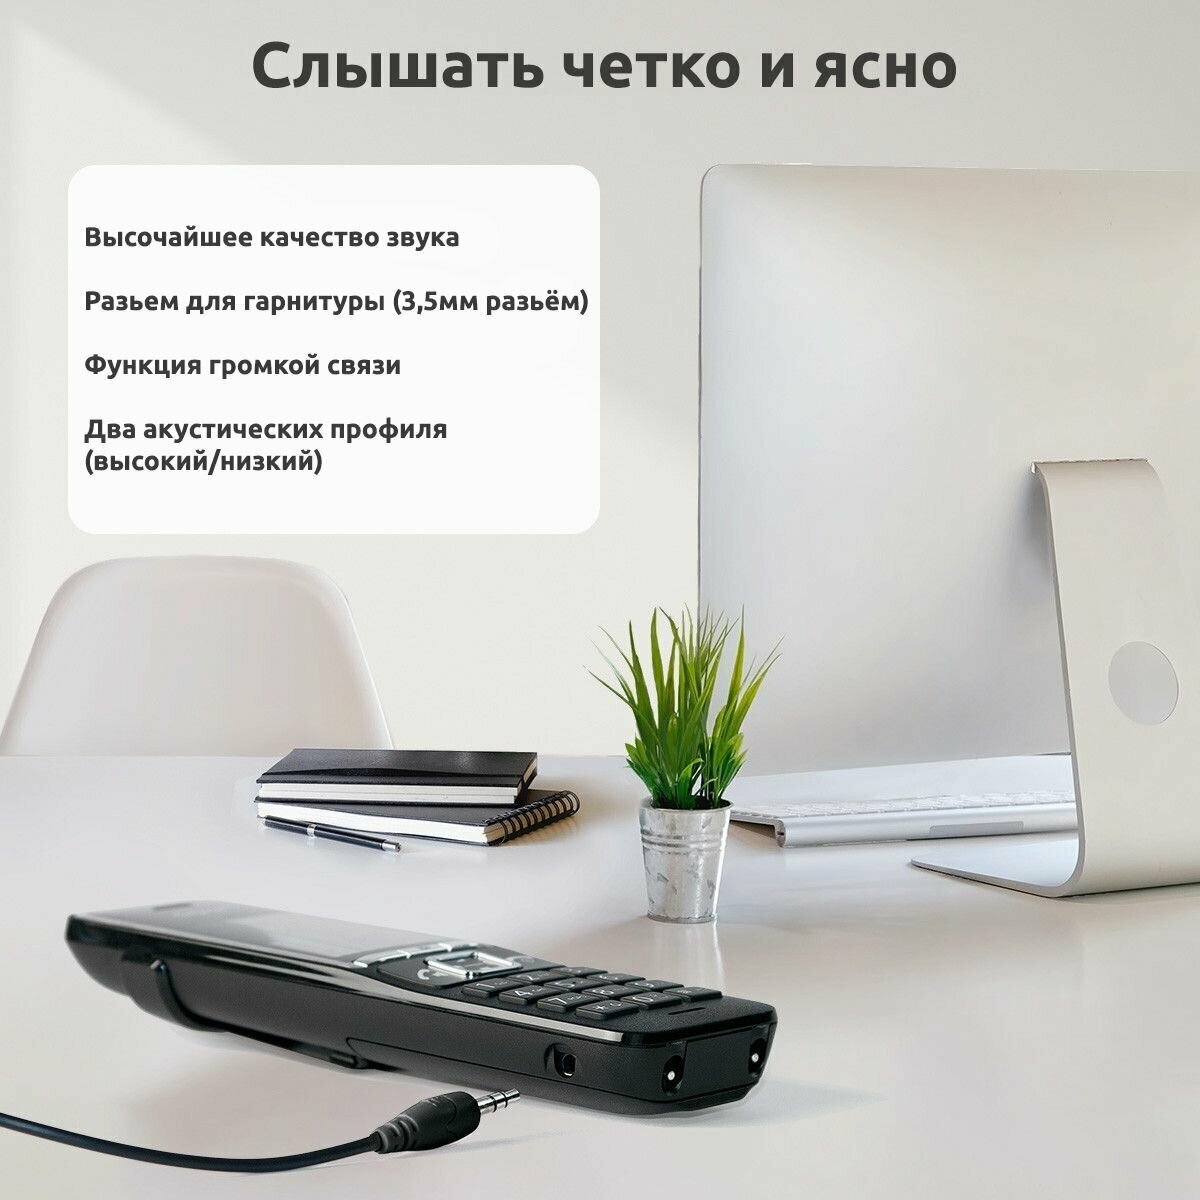 Радиотелефон DECT с двумя трубками Gigaset Comfort 550 DUO RUS Black